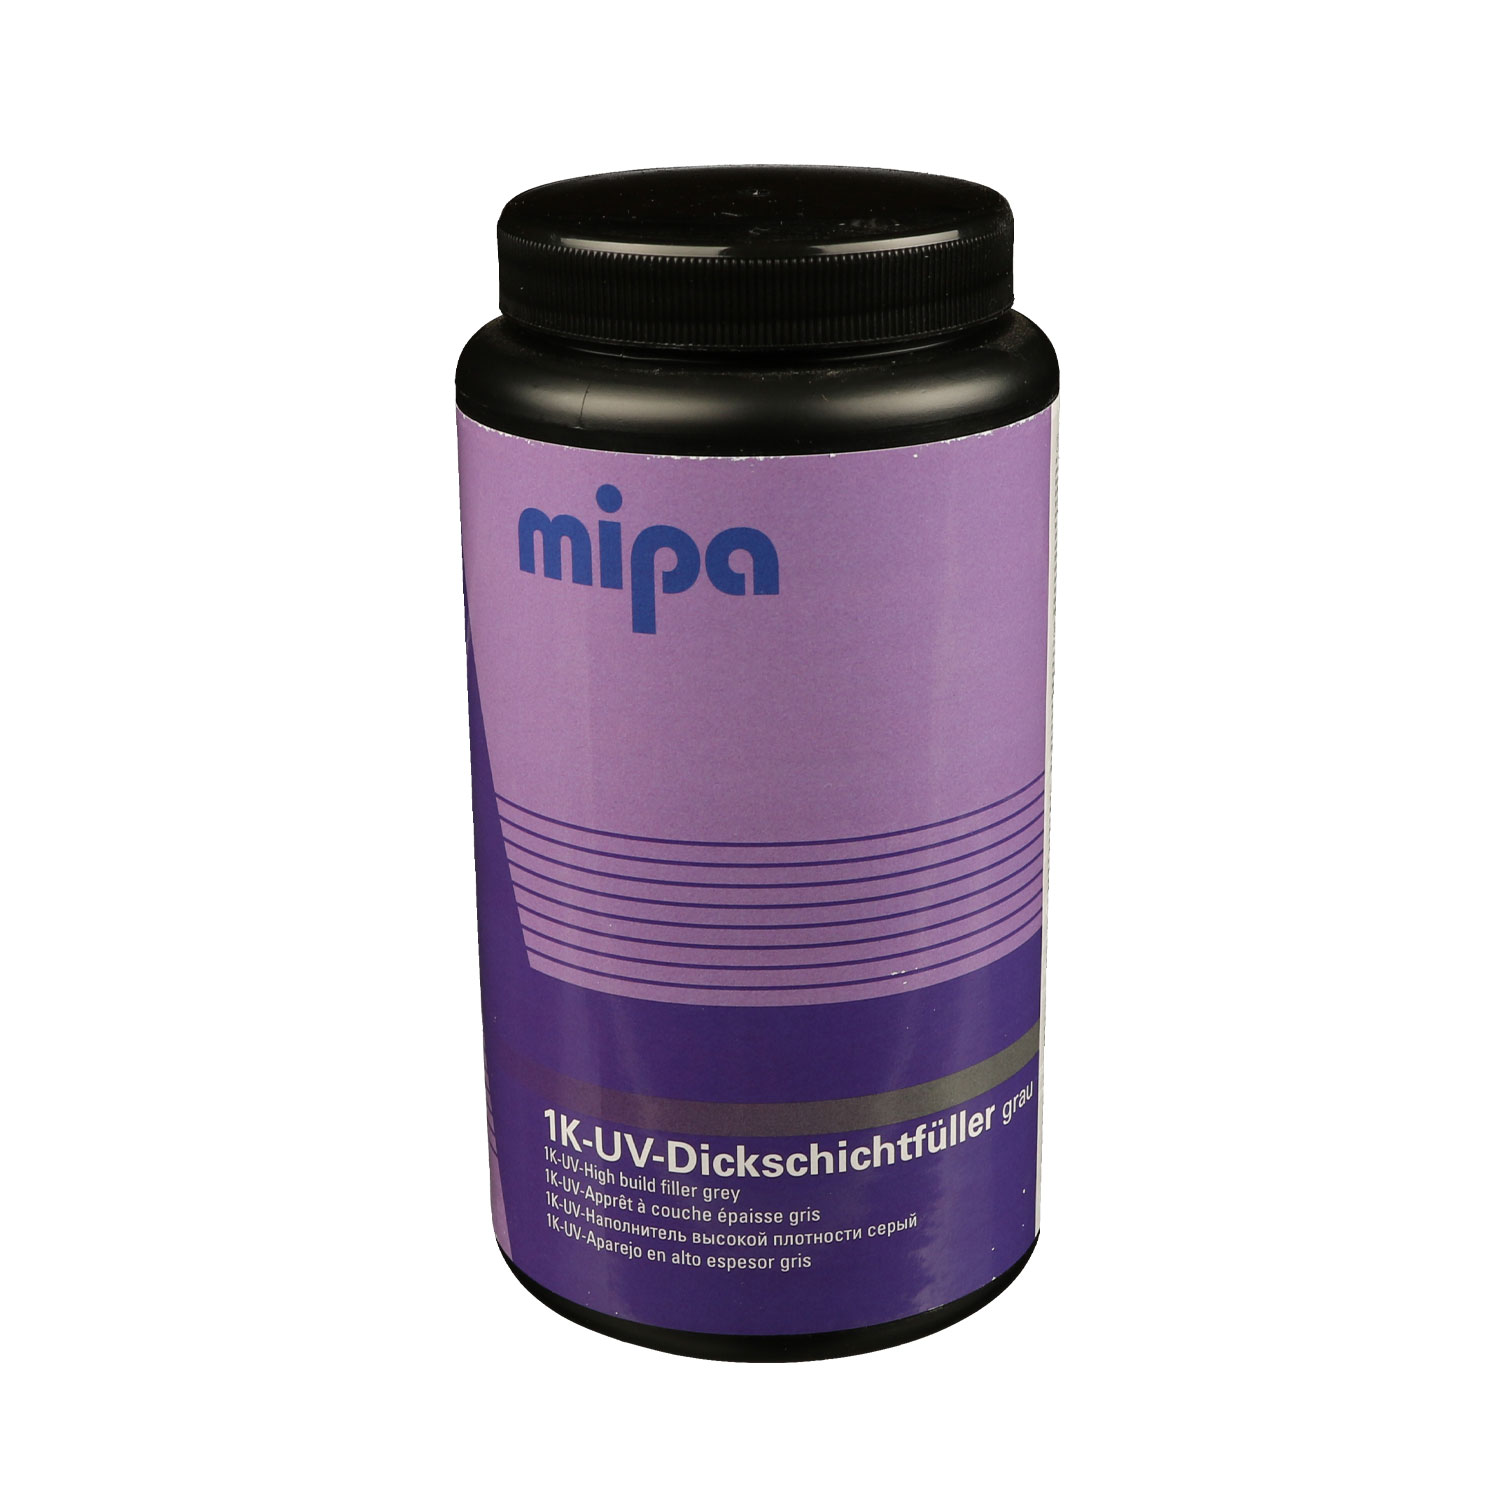 Mipa 1K-UV-Dickschichtfüller